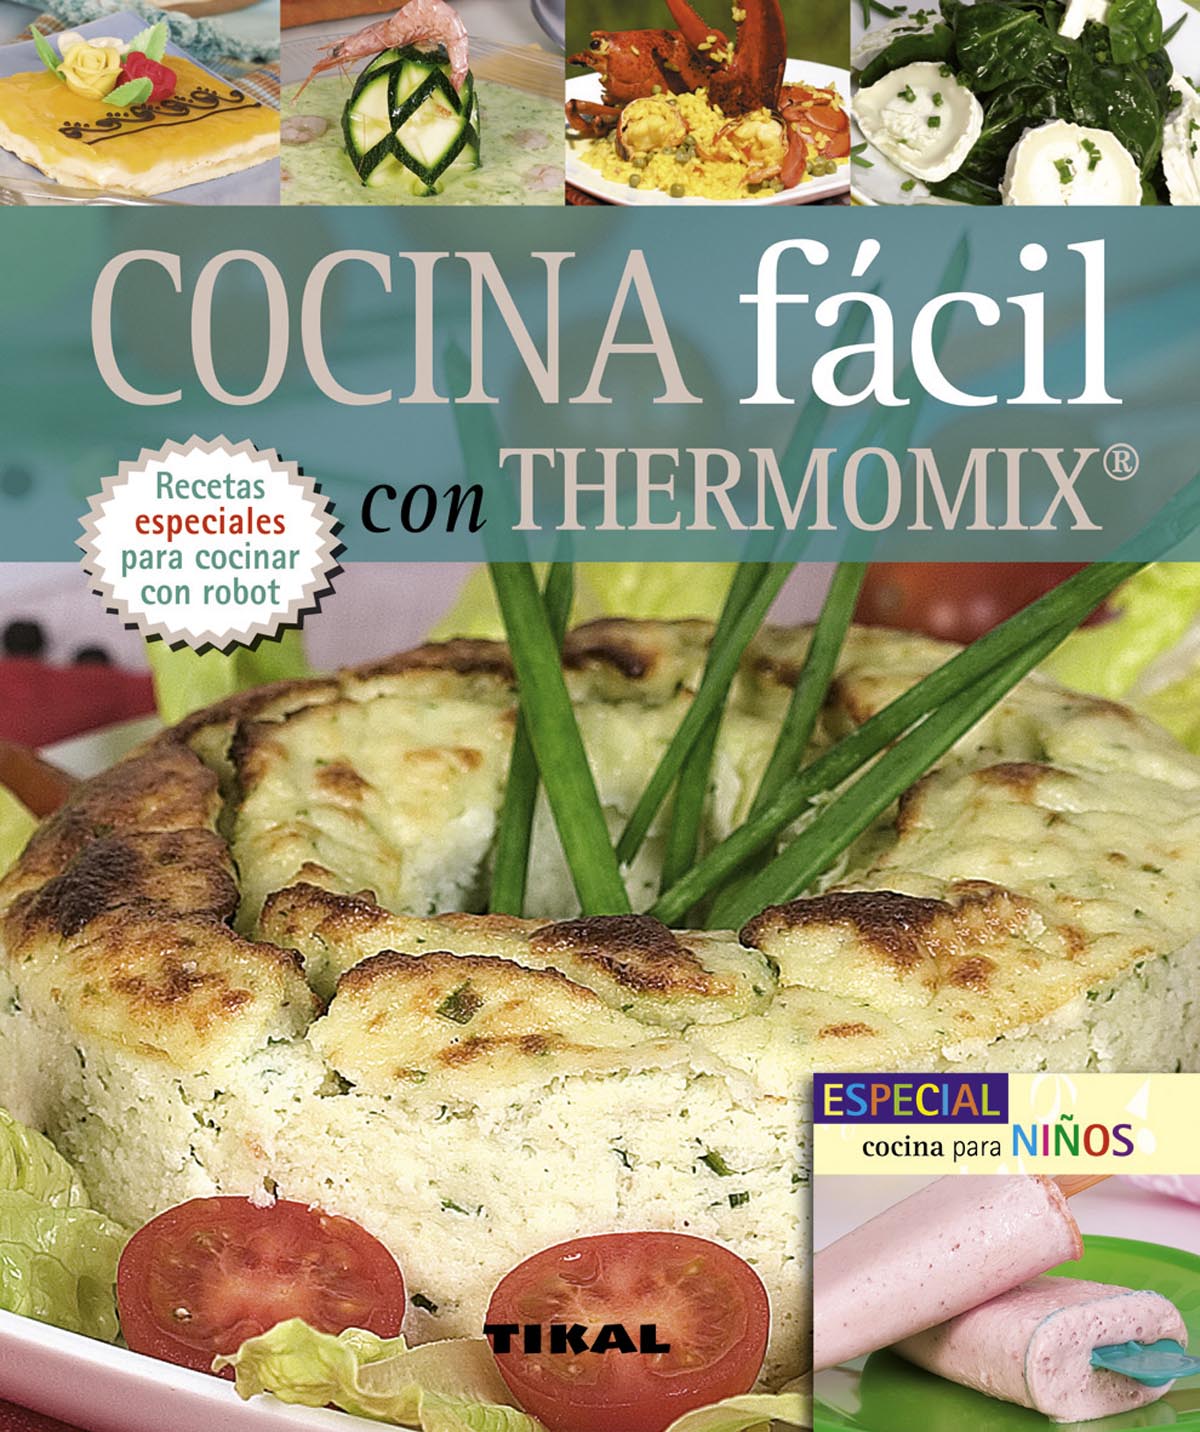 Cocina fcil con thermomix. Incluye especial cocina